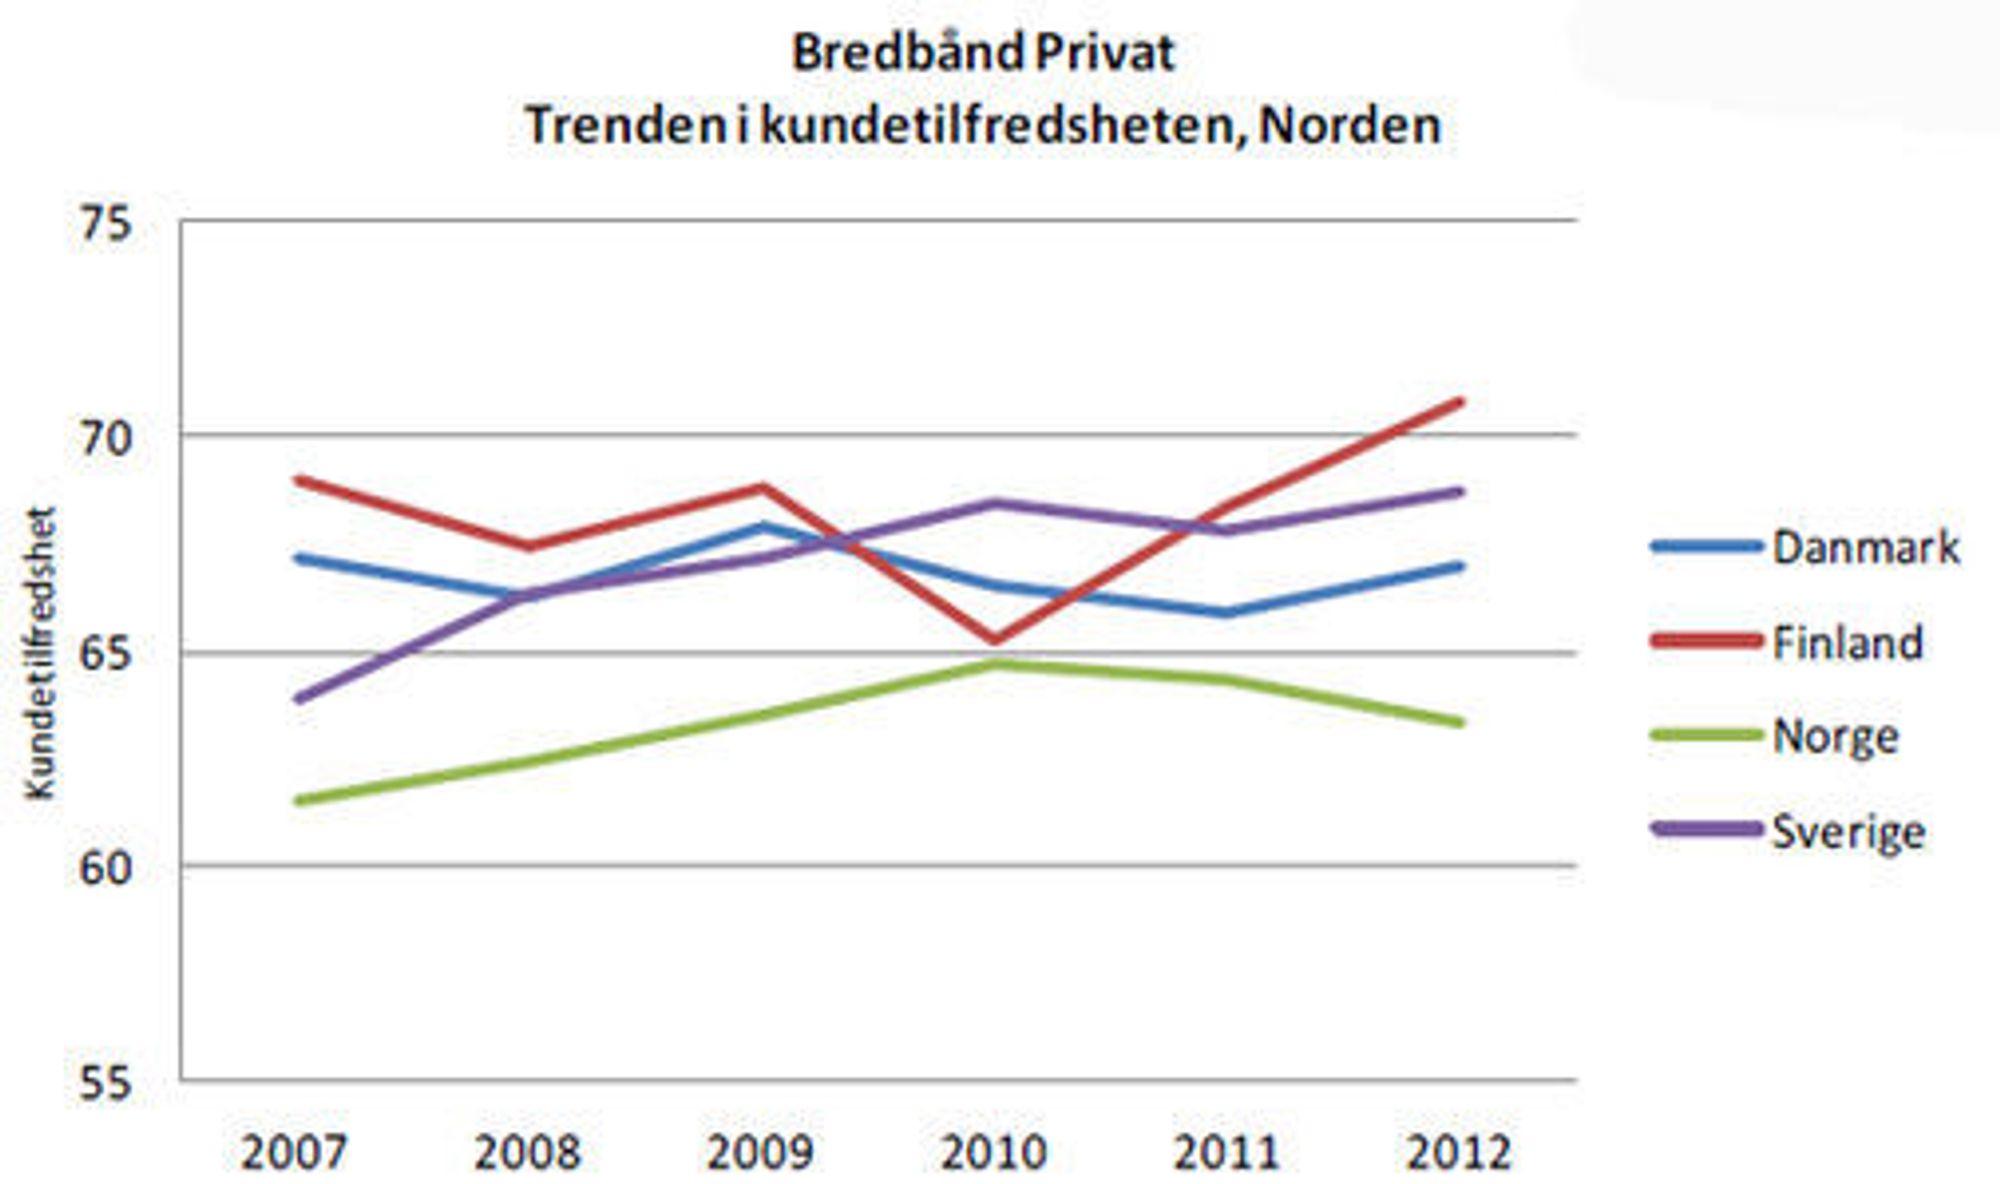 Mens aktørene innen bredbånd til privatmarkedet skjerper seg i Danmark, Finland og Sverige, skjer det motsatte i Norge.